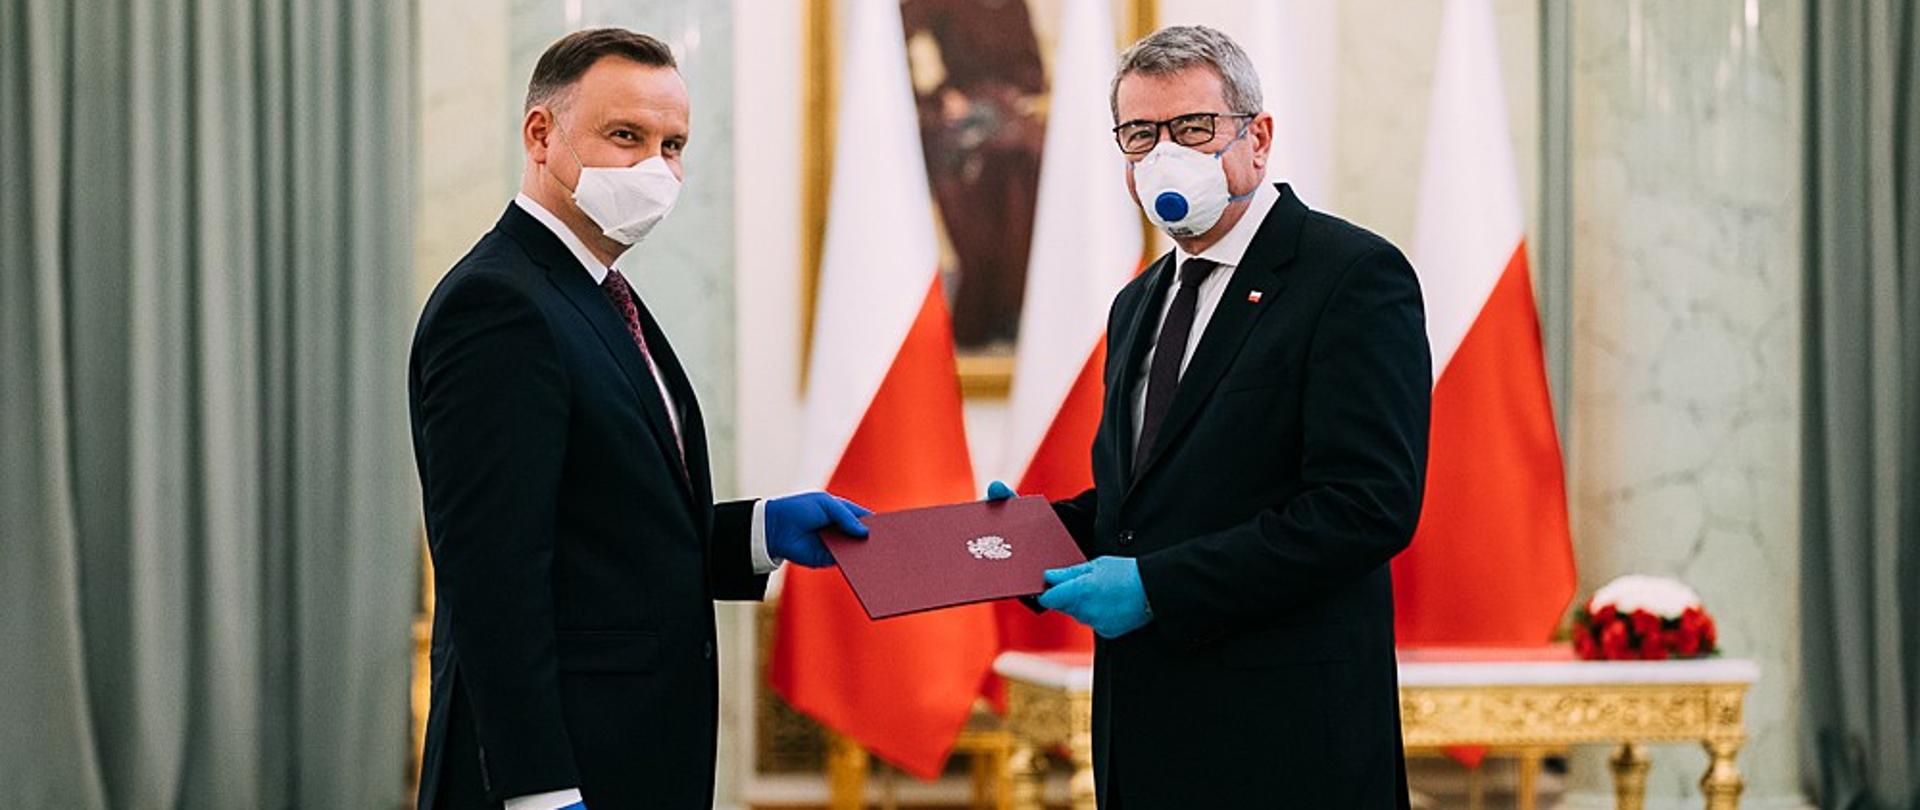 Prezydent Andrzej Duda wręcza powołanie ministrowi Wojciechowi Murdzkowi.